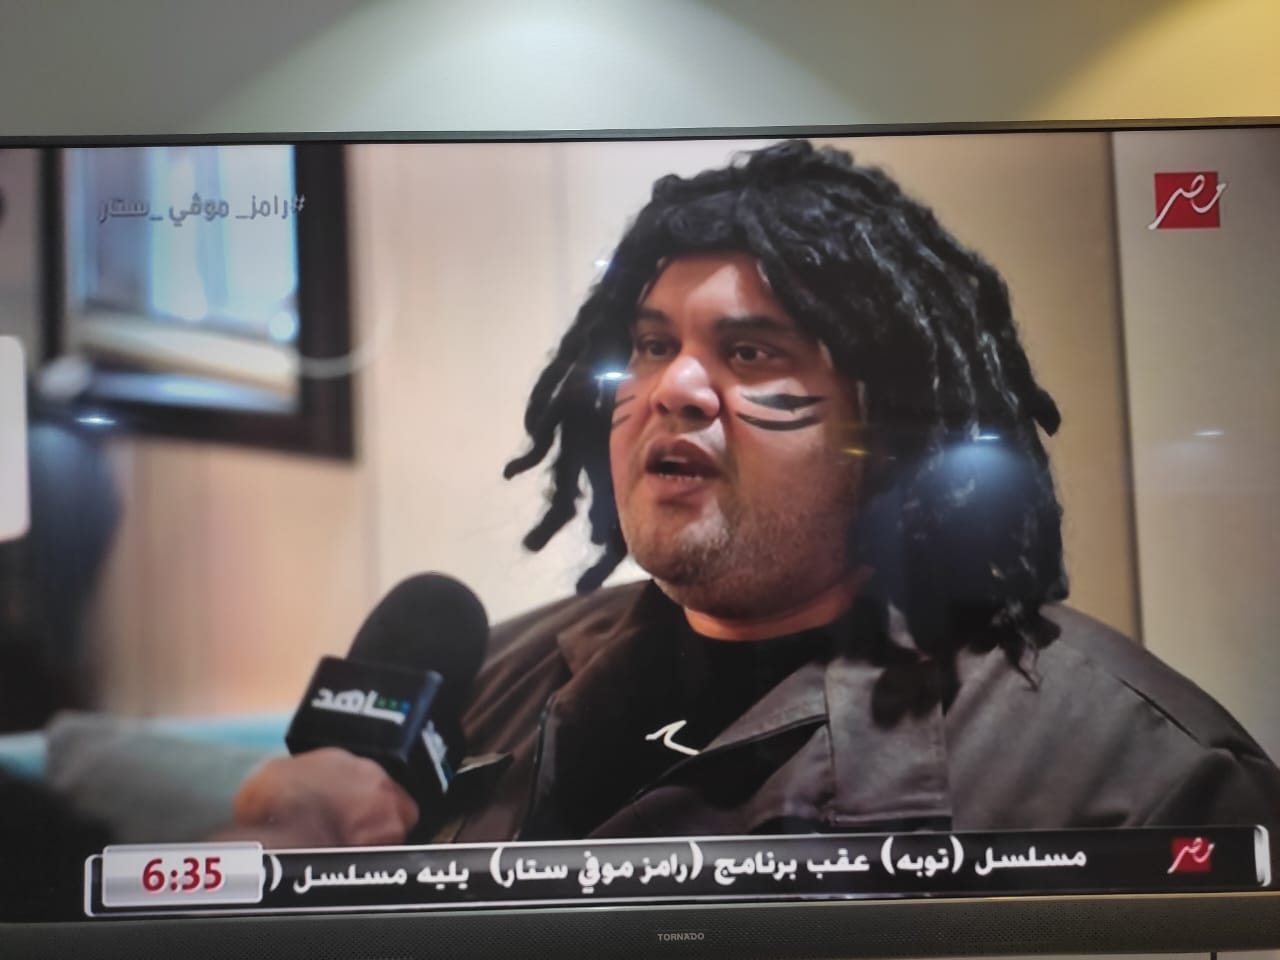 فخاد الضحك.. ملخص إيفيهات رامز جلال في حلقة أحمد فتحي في “رامز موفي ستار” 1